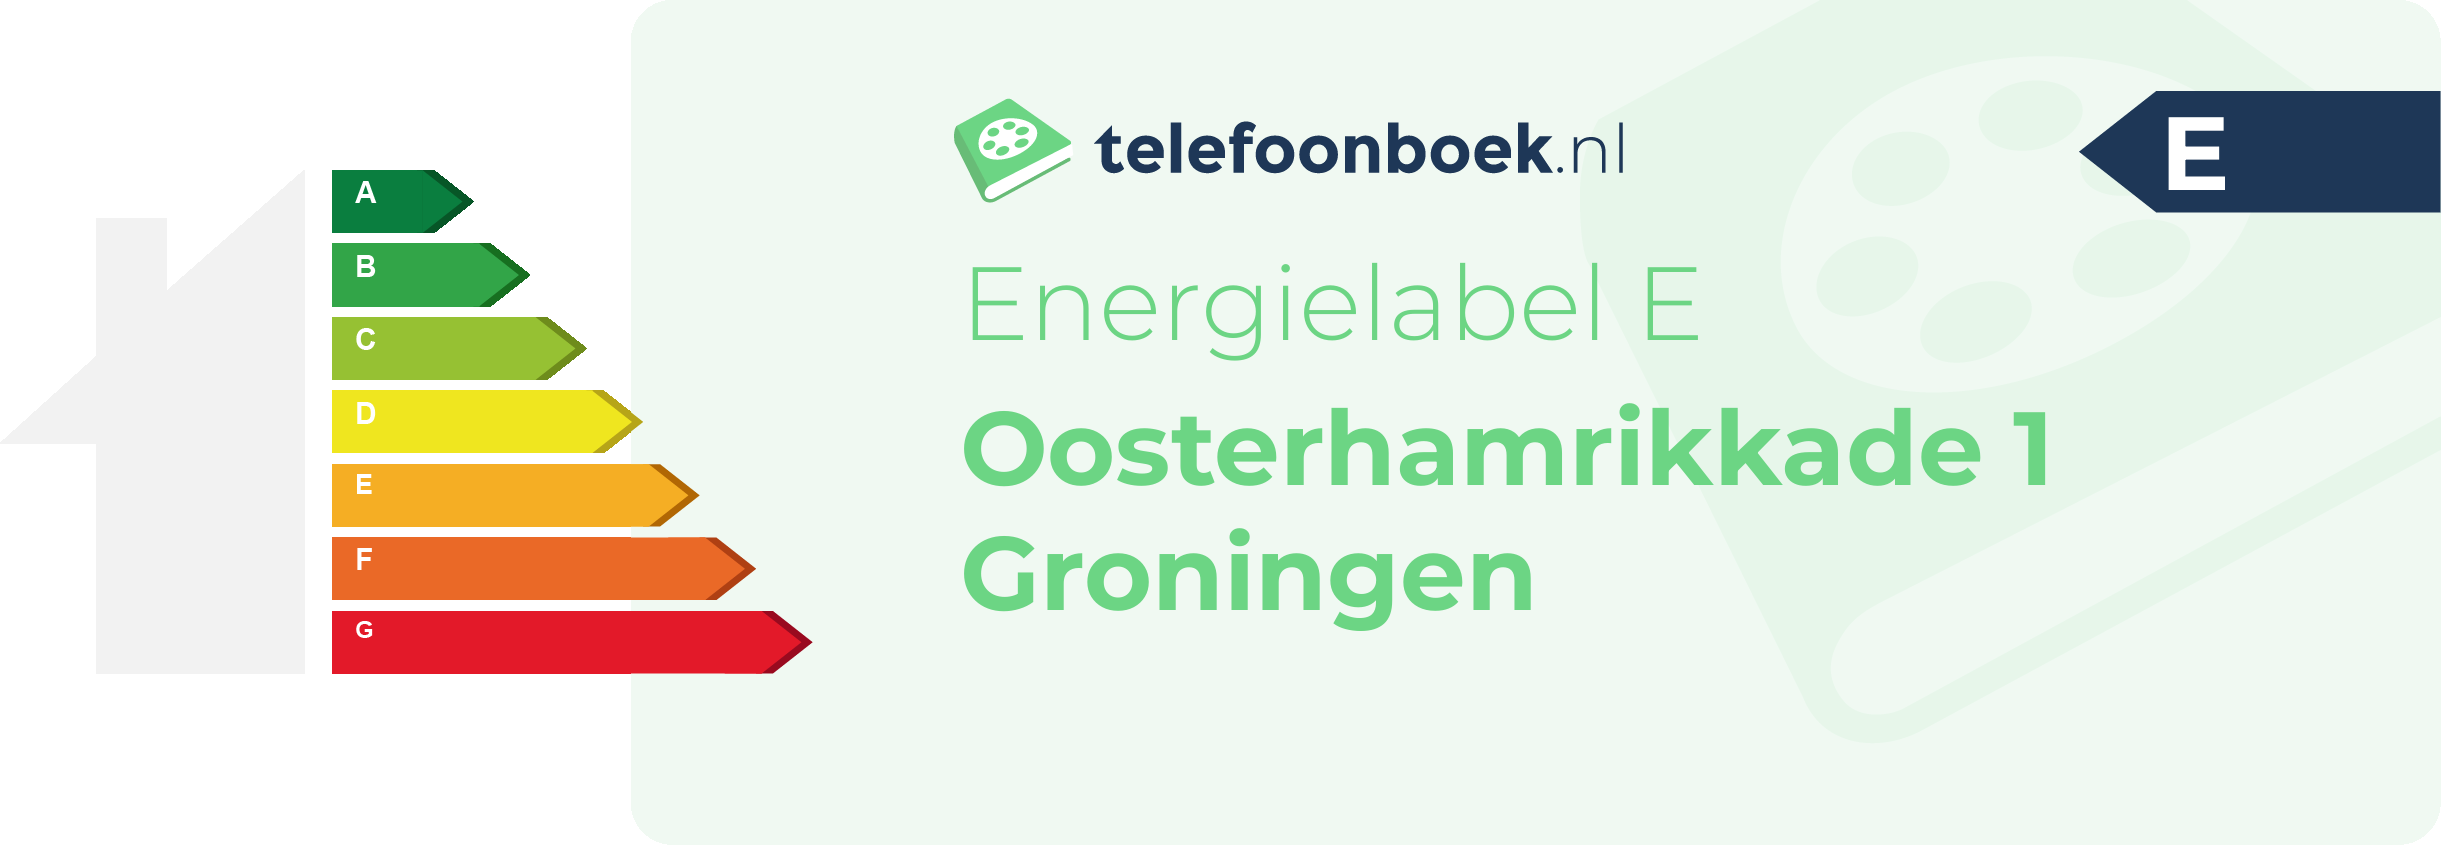 Energielabel Oosterhamrikkade 1 Groningen